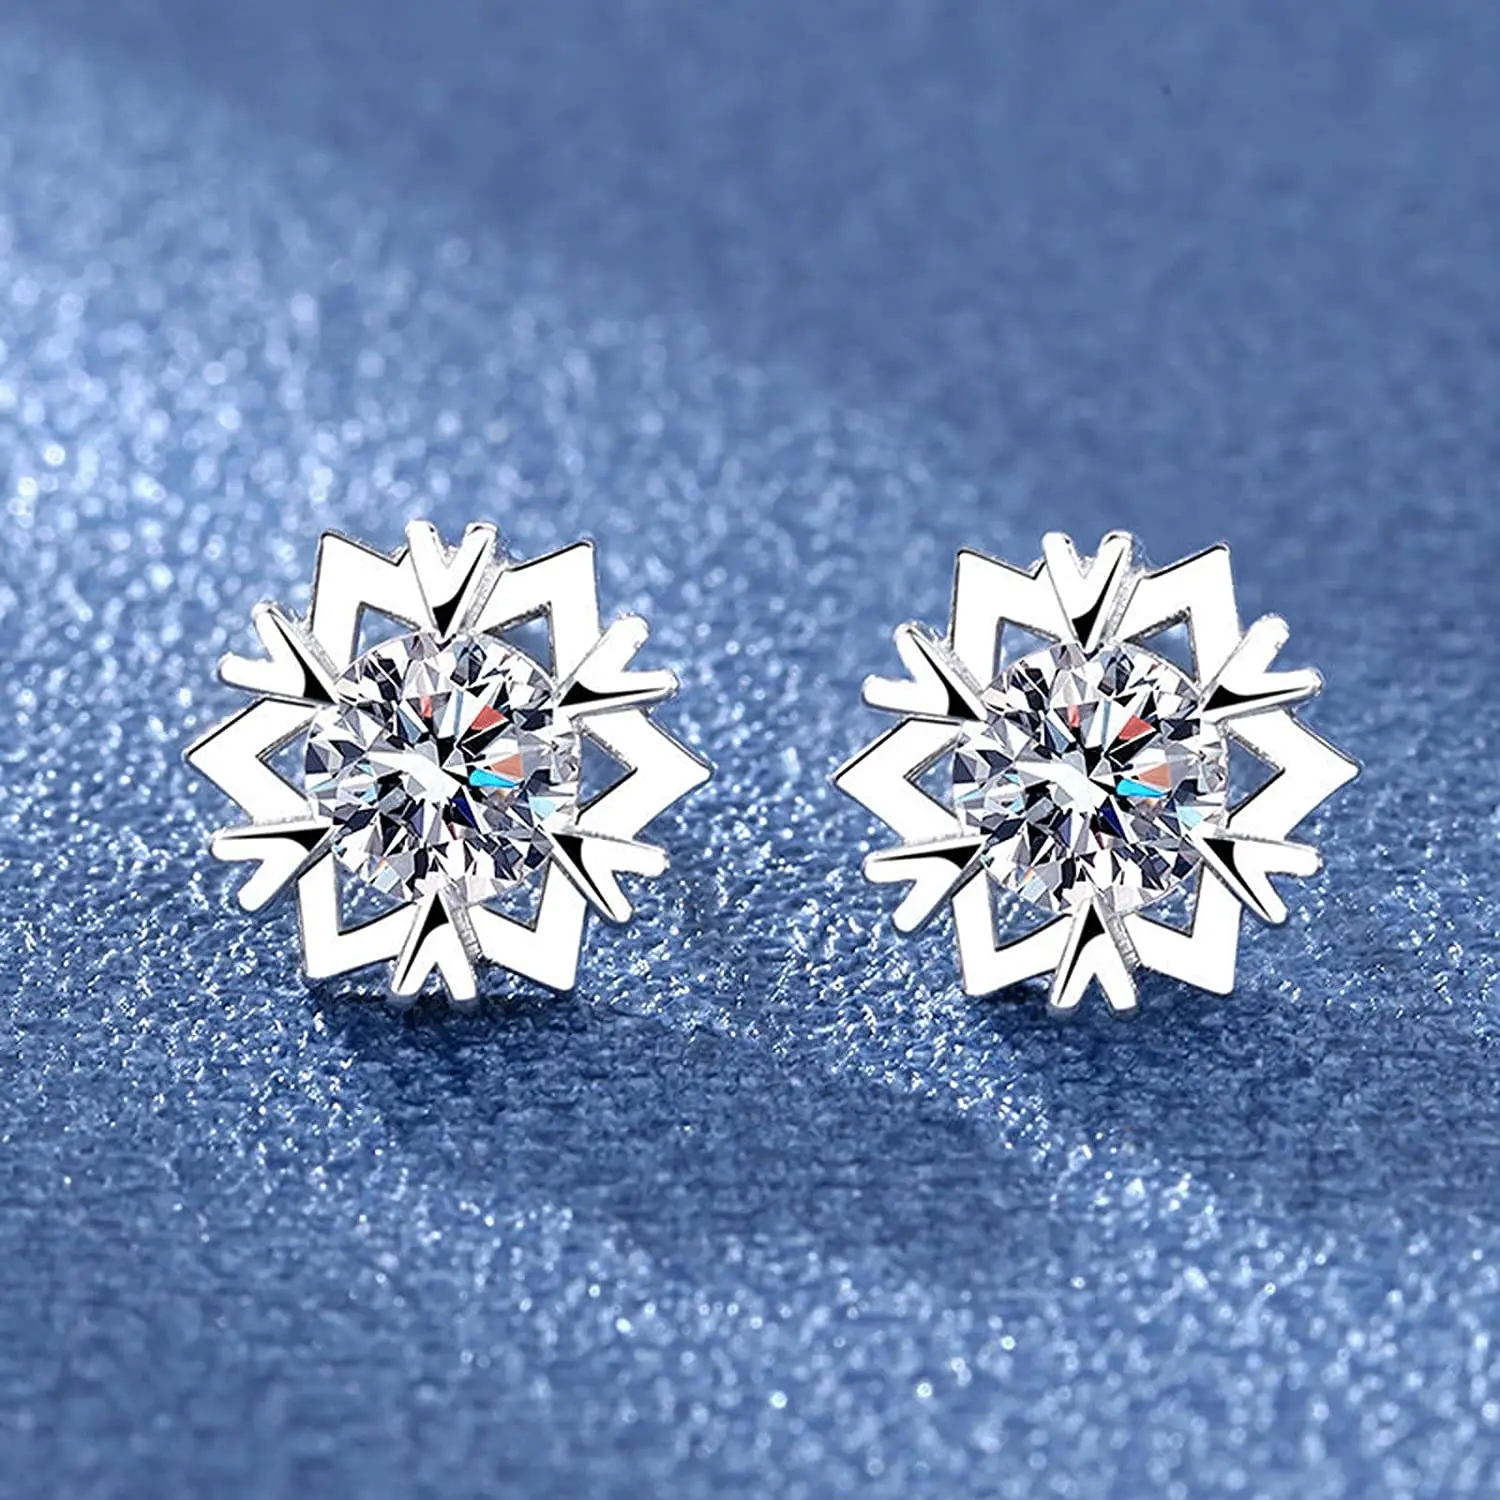 

Silver Snowflake Diamond Stud Earrings,Cubic Zirconia Hypoallergenic Jewellery Gifts Studded Ear Jewelry for Women Girls